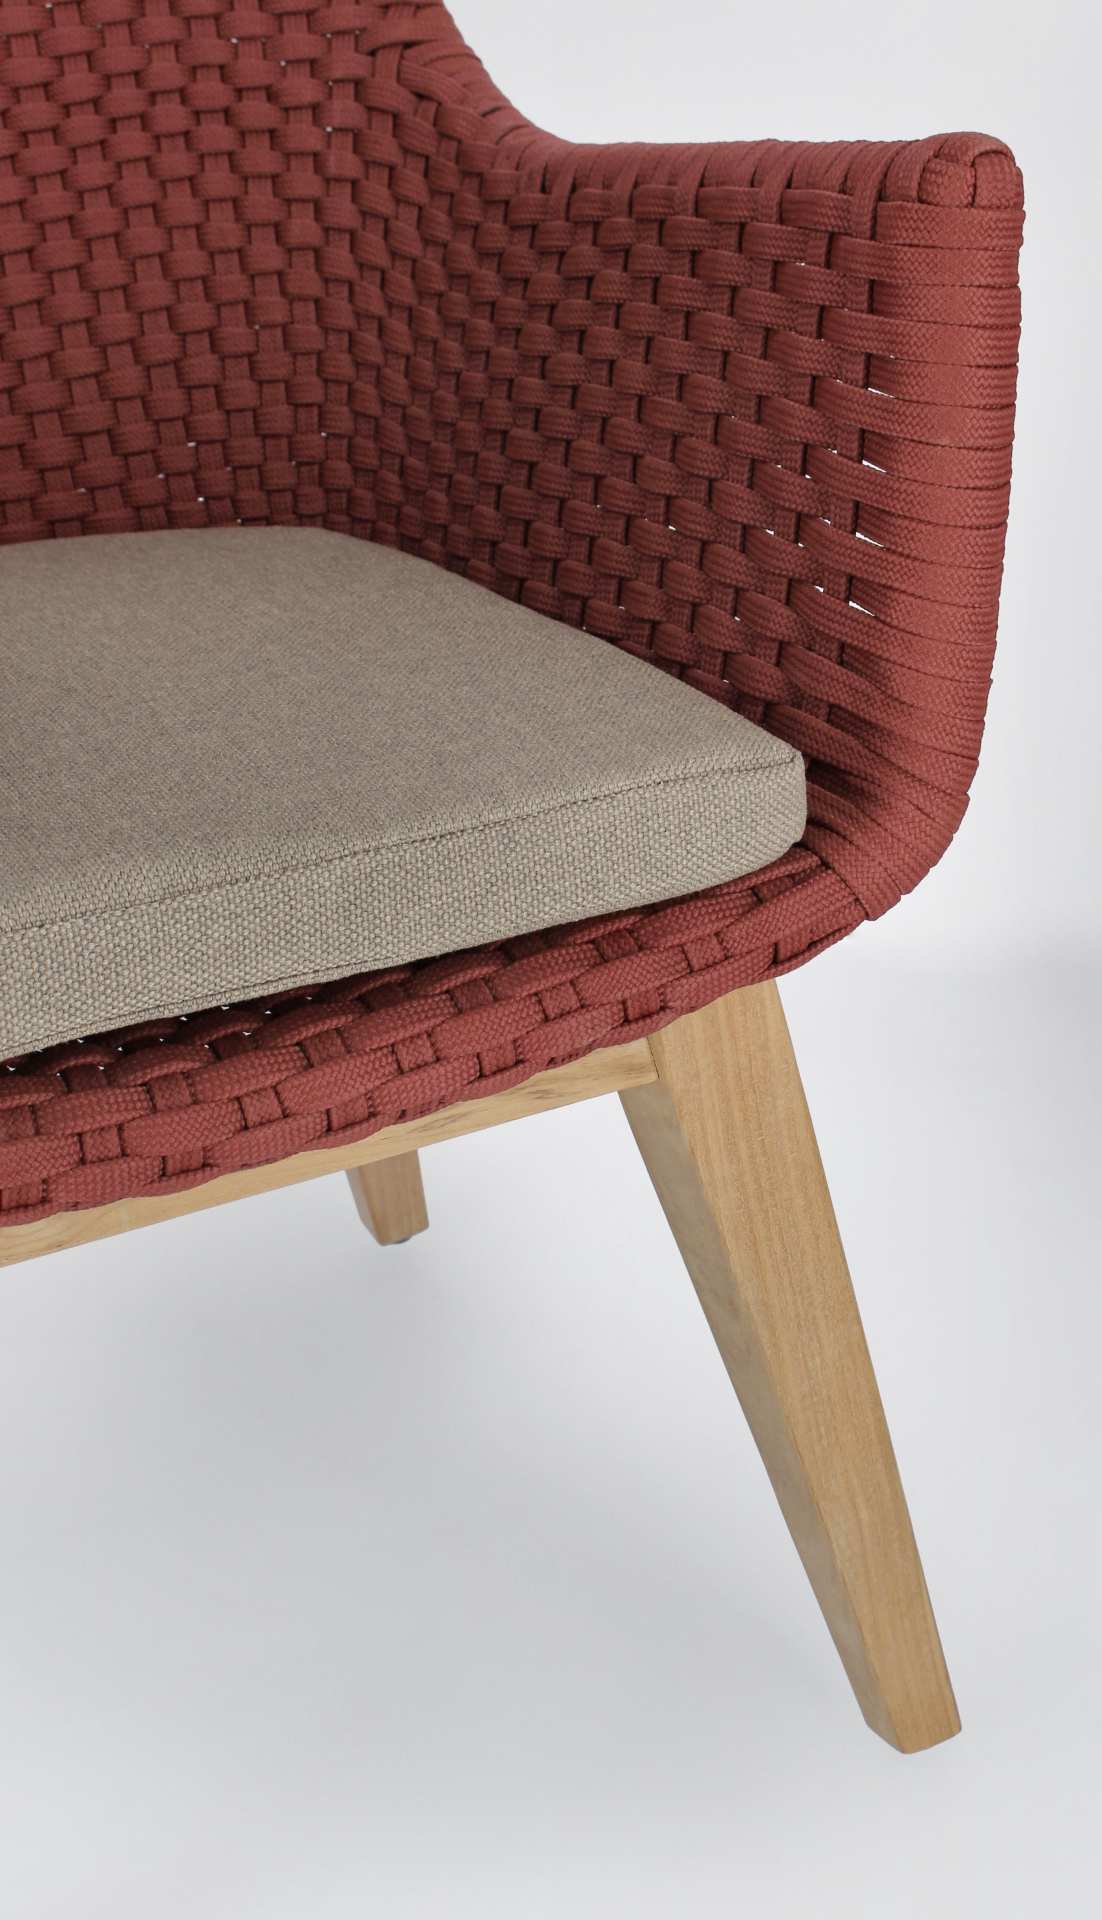 Der Gartenstuhl Allison überzeugt mit seinem modernen Design. Gefertigt wurde er aus Olefin-Stoff, welcher einen roten Farbton besitzt. Das Gestell ist aus Teakholz und hat eine natürliche Farbe. Der Stuhl verfügt über eine Sitzhöhe von 48 cm und ist für 